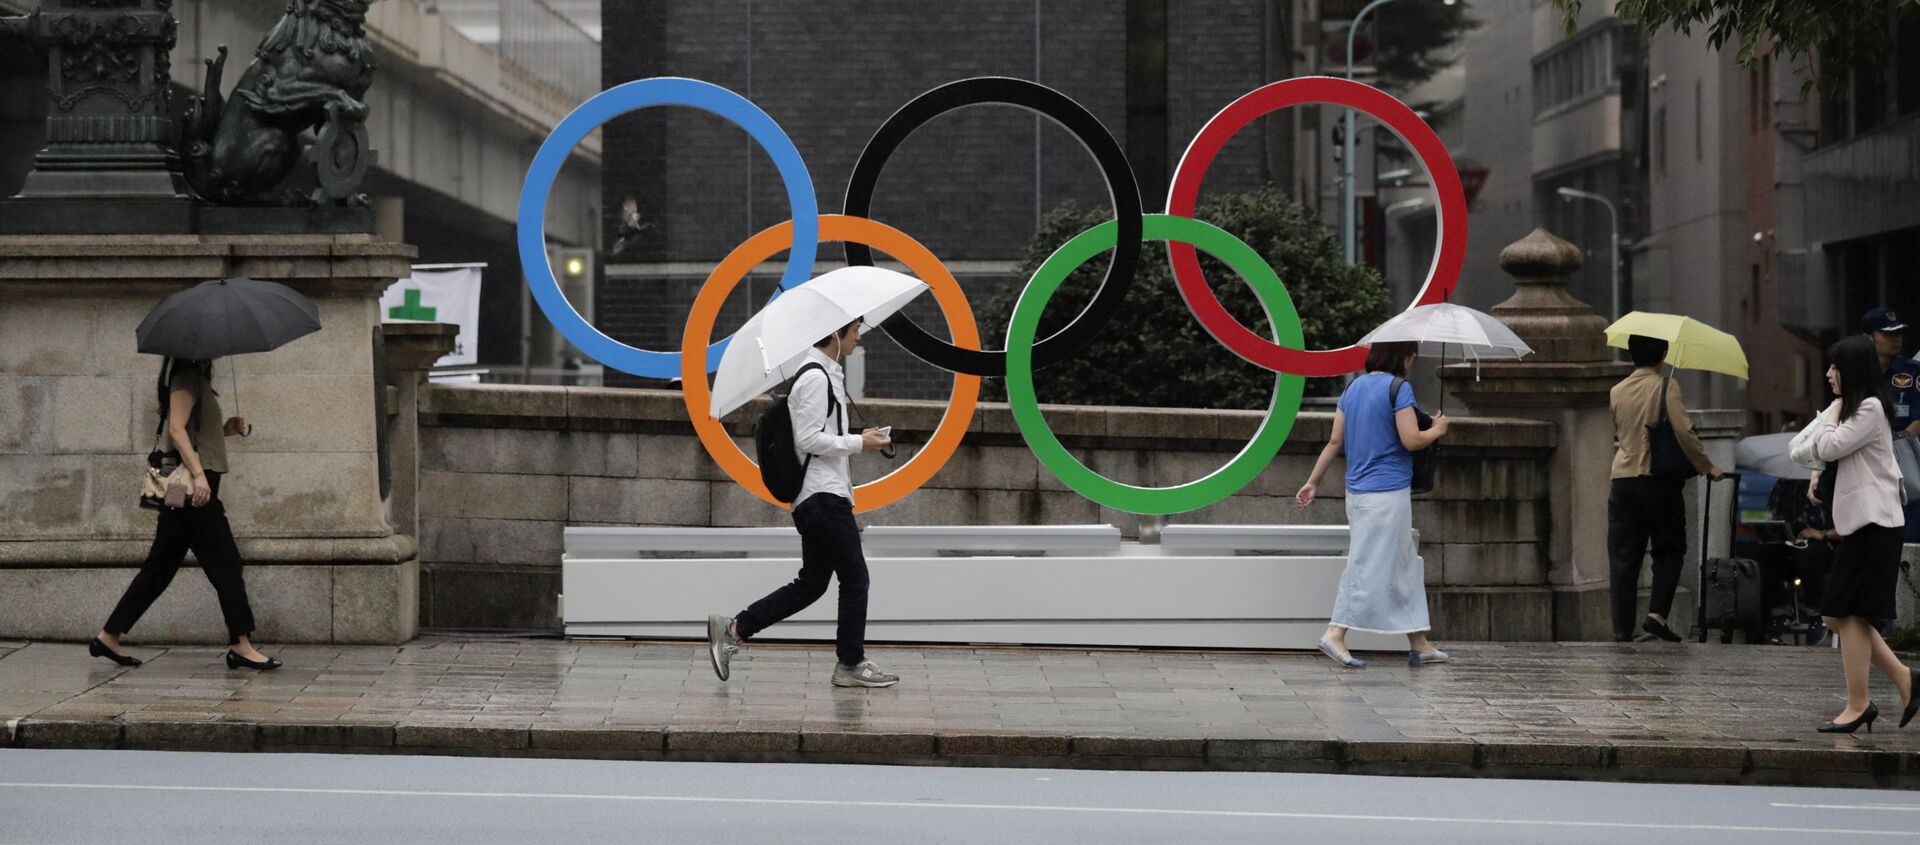 Олимпийские кольца, установленные в преддверии Олимпиады-2020 в центре Токио - Sputnik Молдова, 1920, 20.03.2021